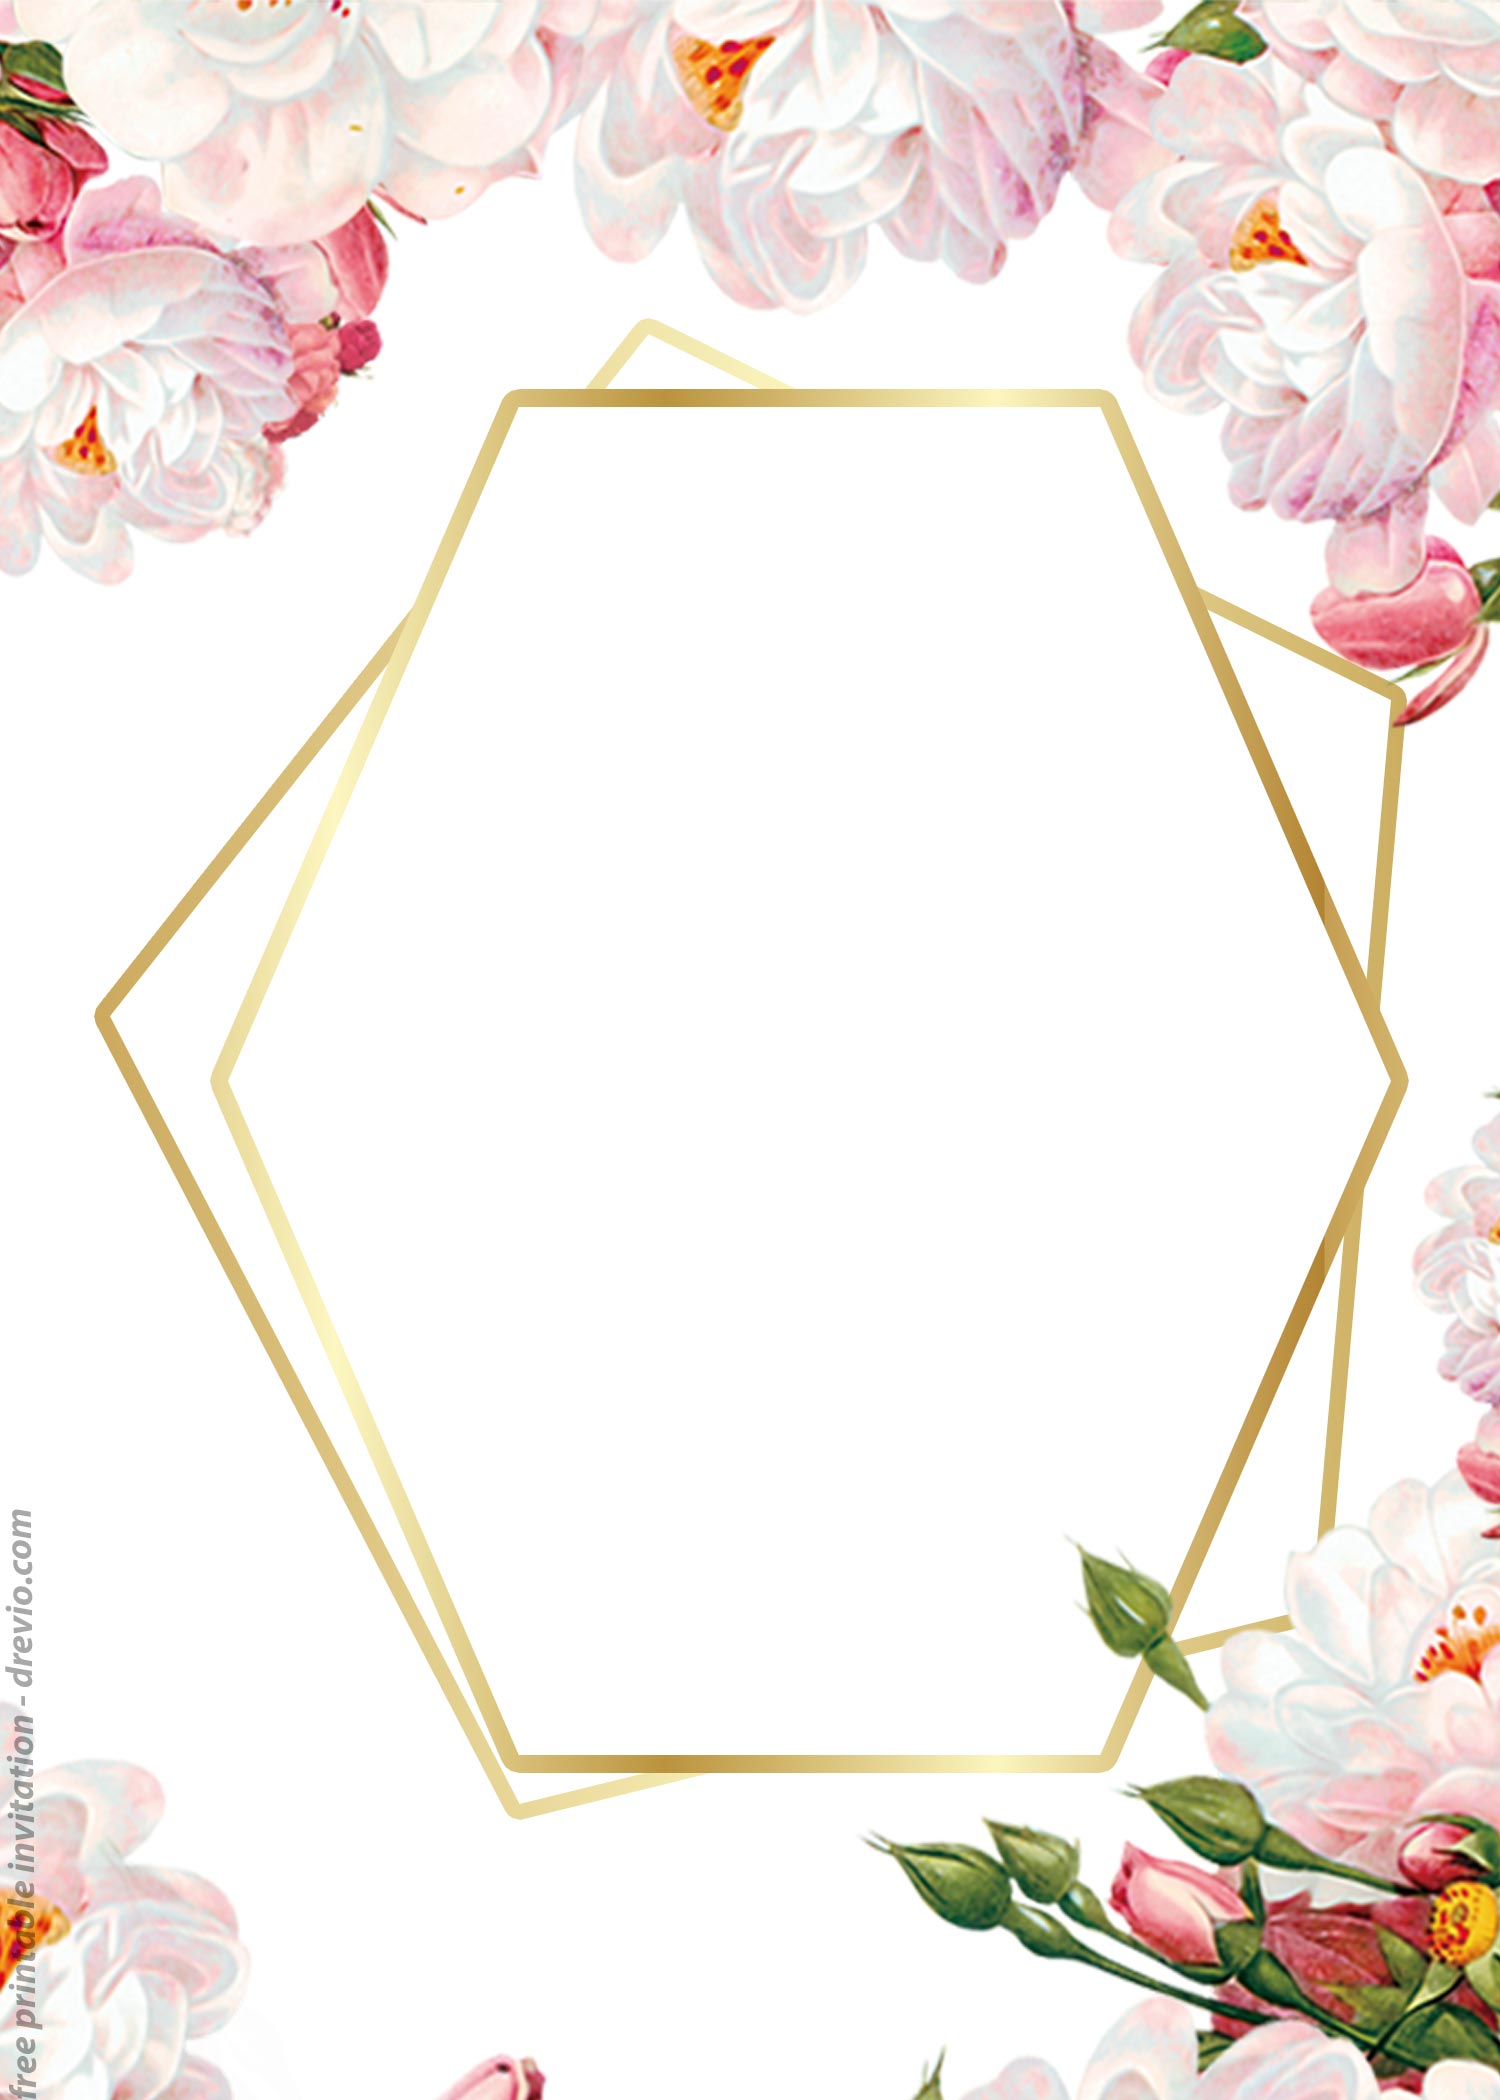 FREE-Printable-Floral-Jasminel-Invitation-Templates